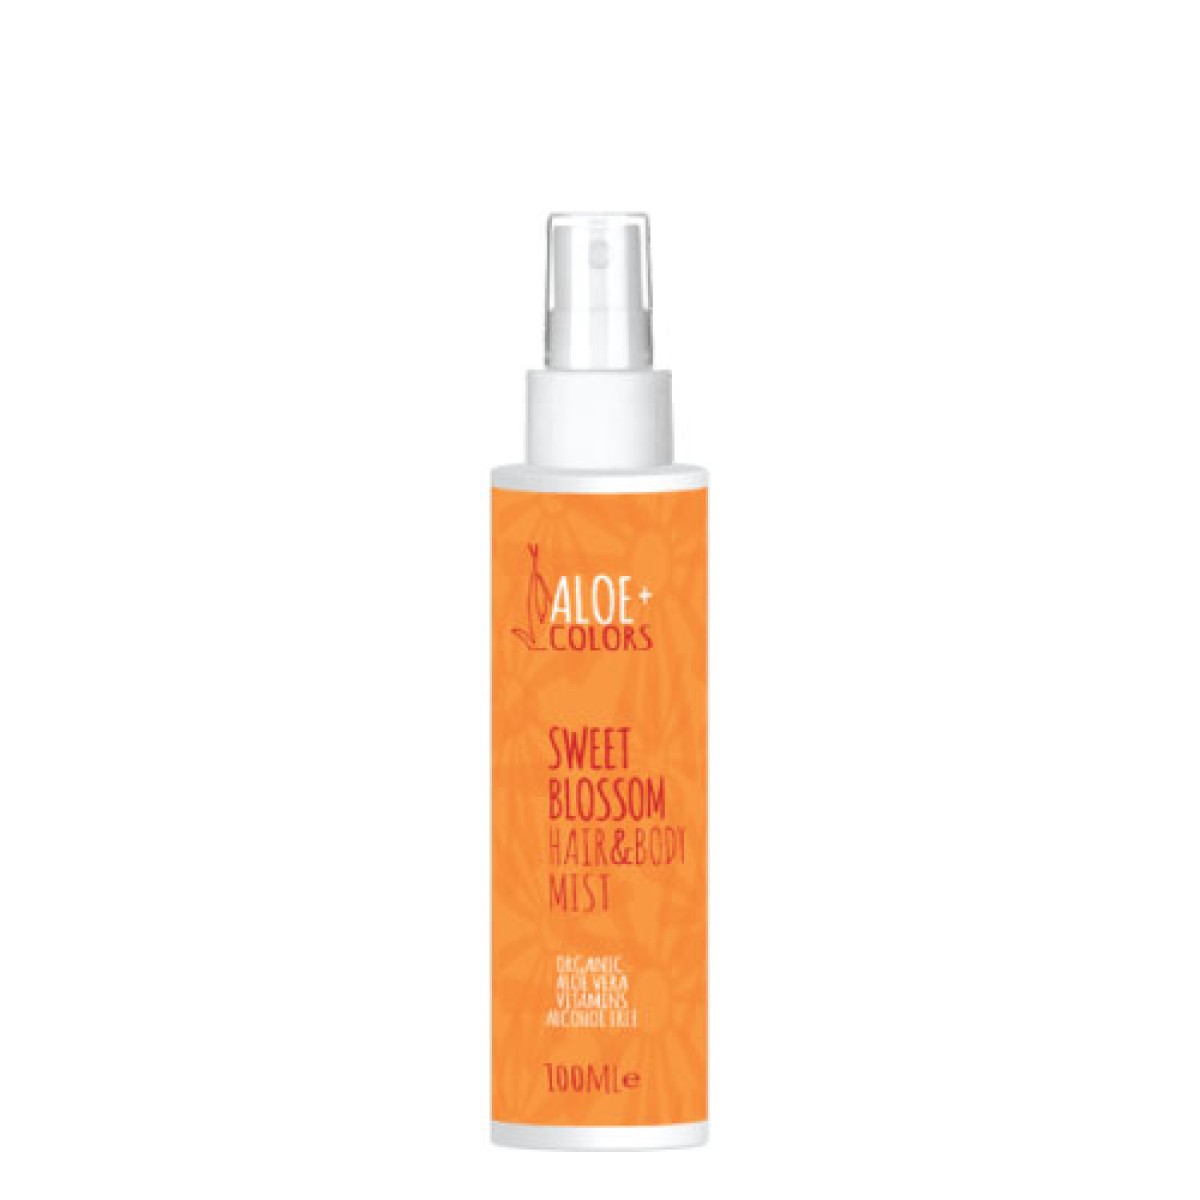 Aloe+Colors | Hair & Body Mist Sweet Blossom | 100ml